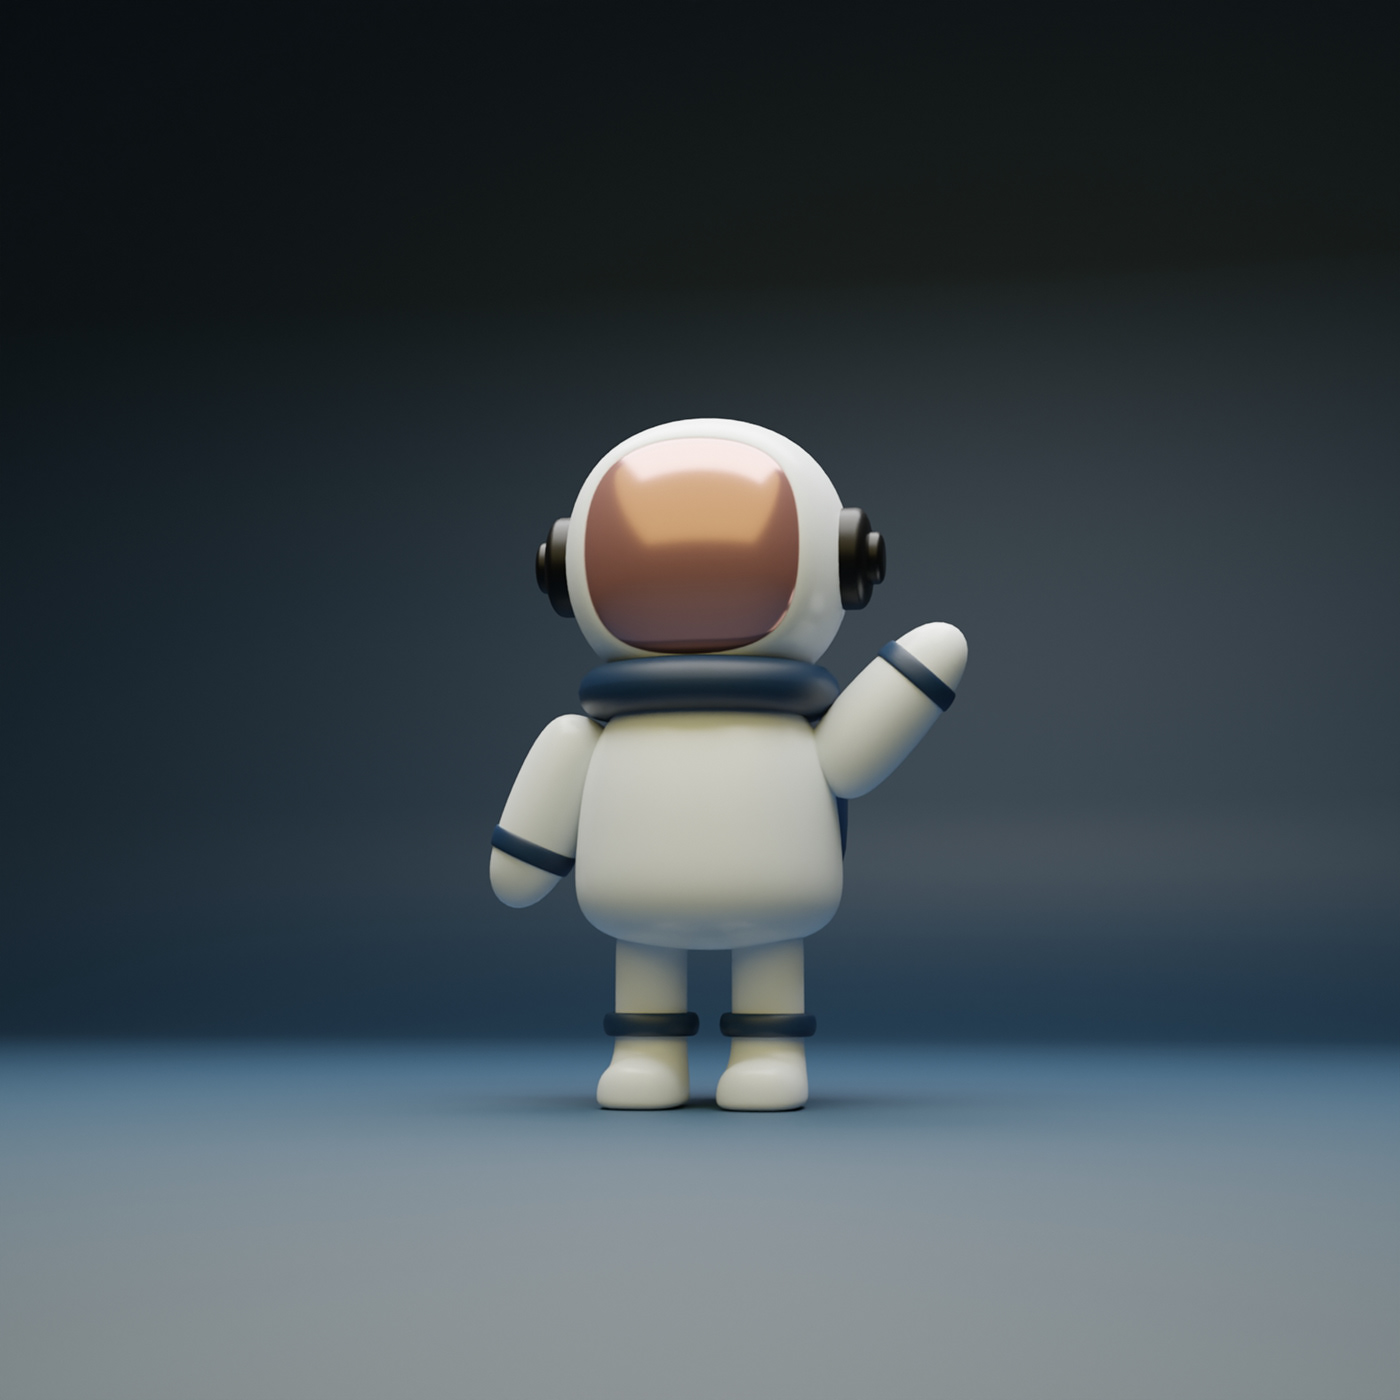 3D 3DDesign astronaut blender Character chibi modeling Render